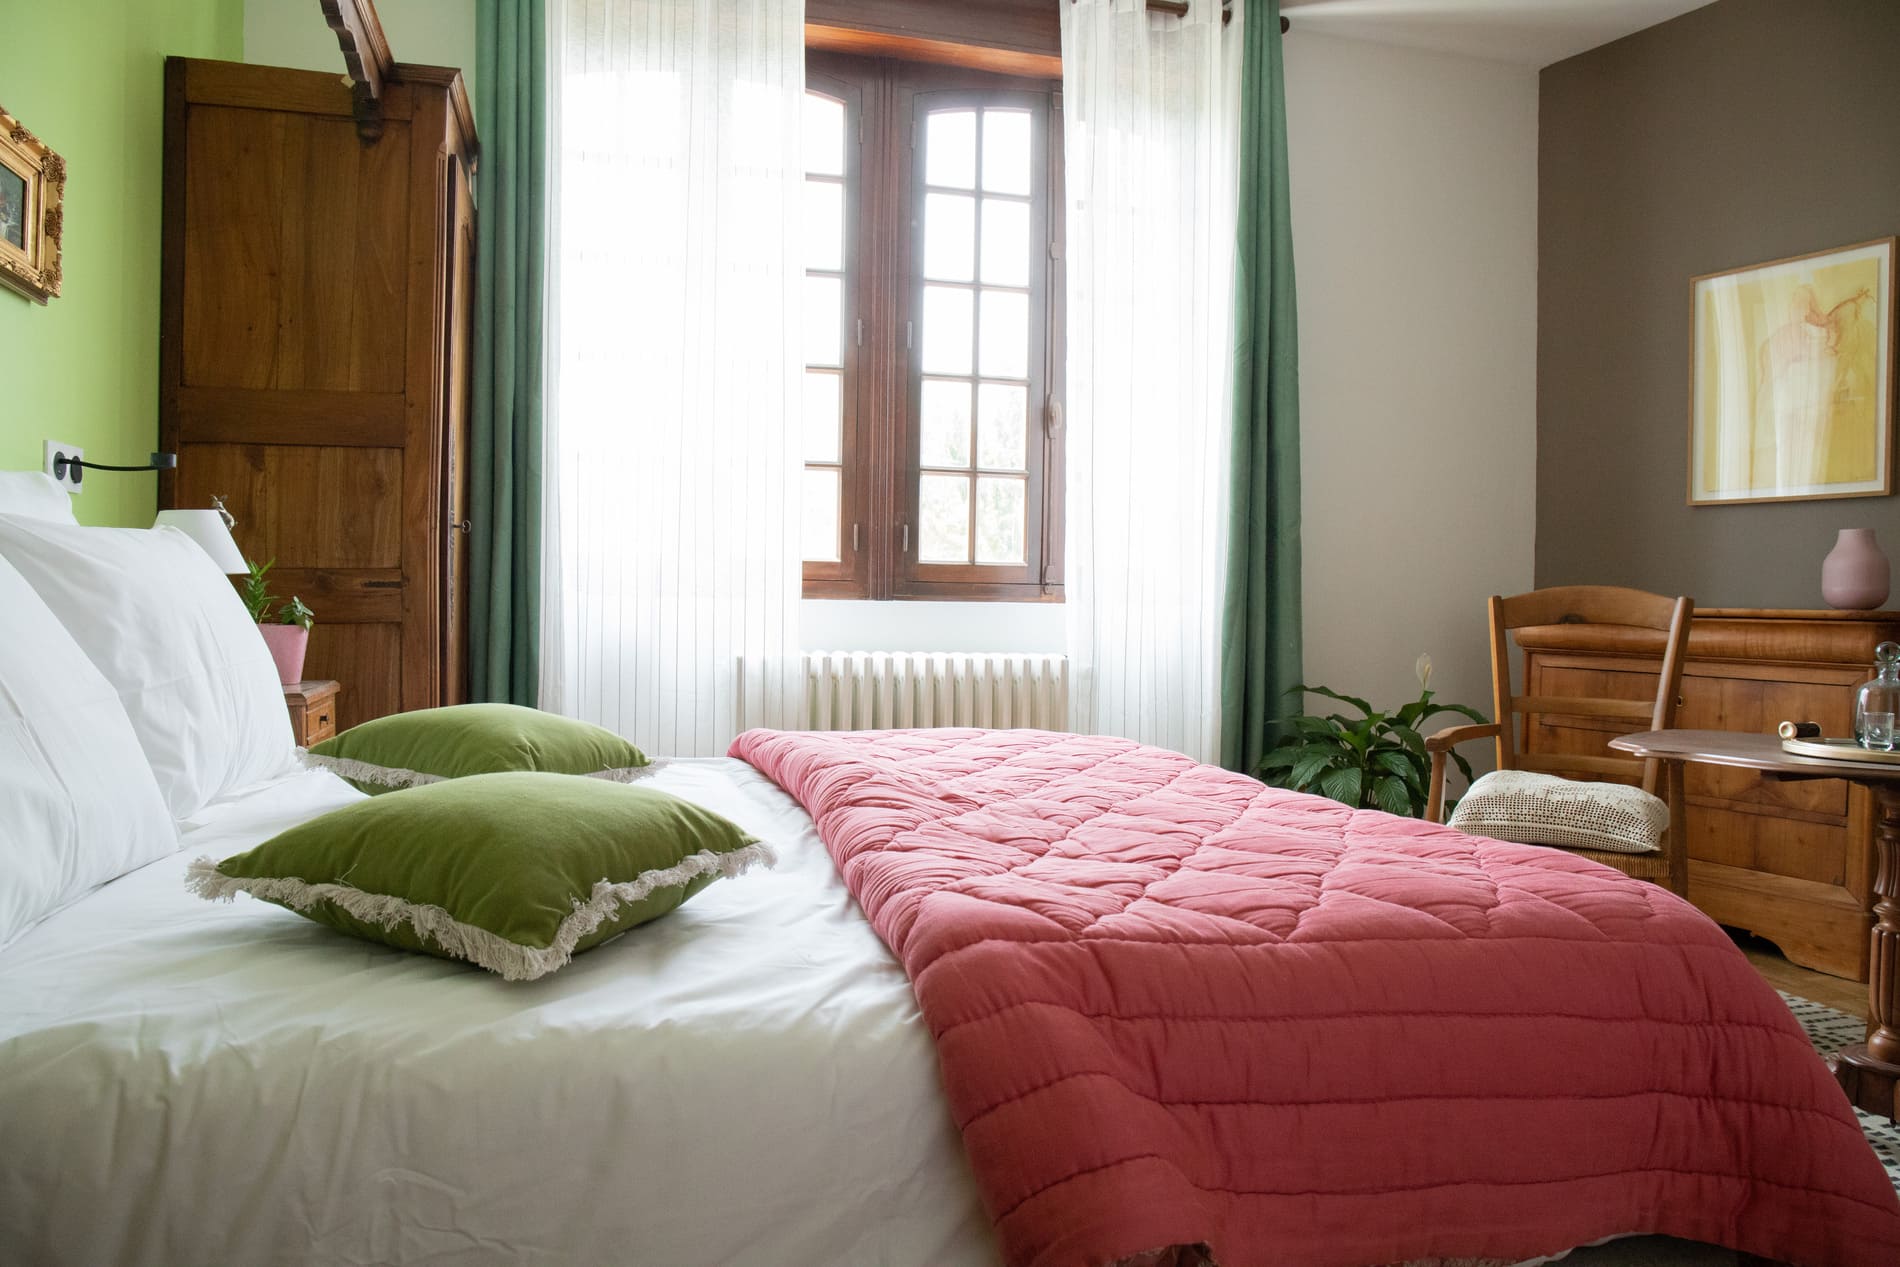 Nos chambres d'hôtes en Gironde - Le Camélia Blanc